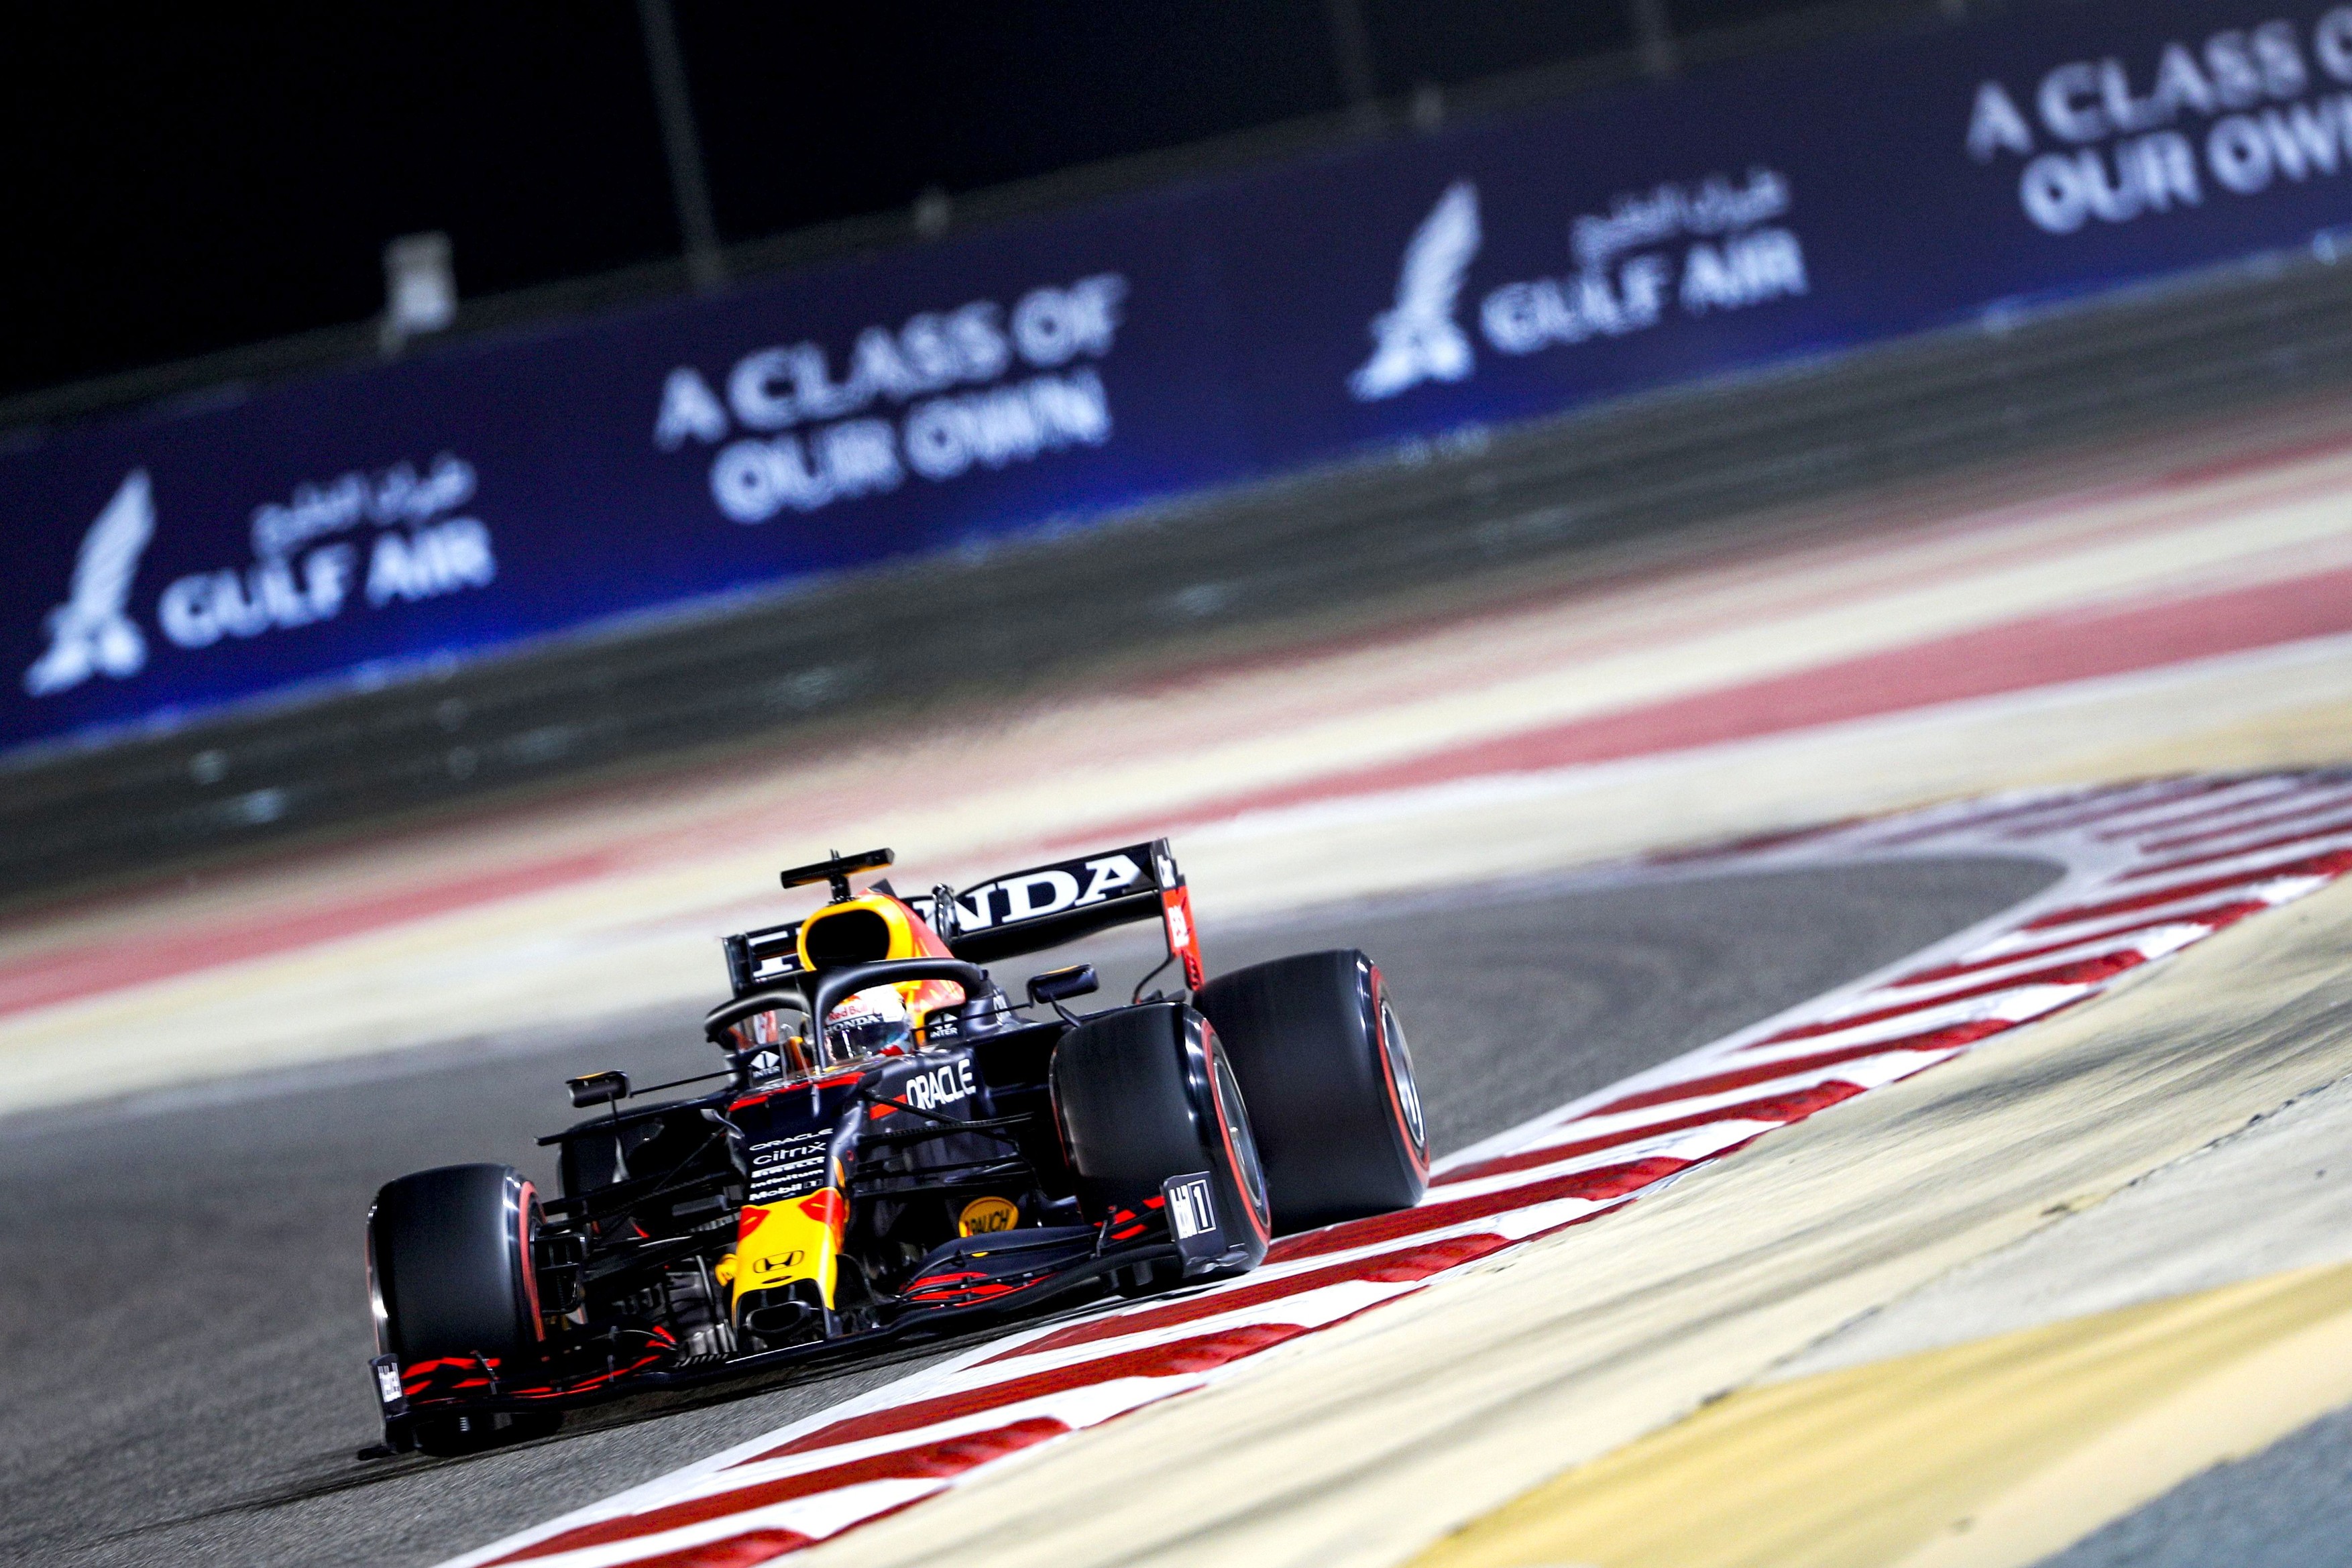 LIVE VIDEO Start în Formula 1! MP din Bahrain, de la 18:00, la Digi Sport 1 și Digi 4K. Șansa lui Verstappen